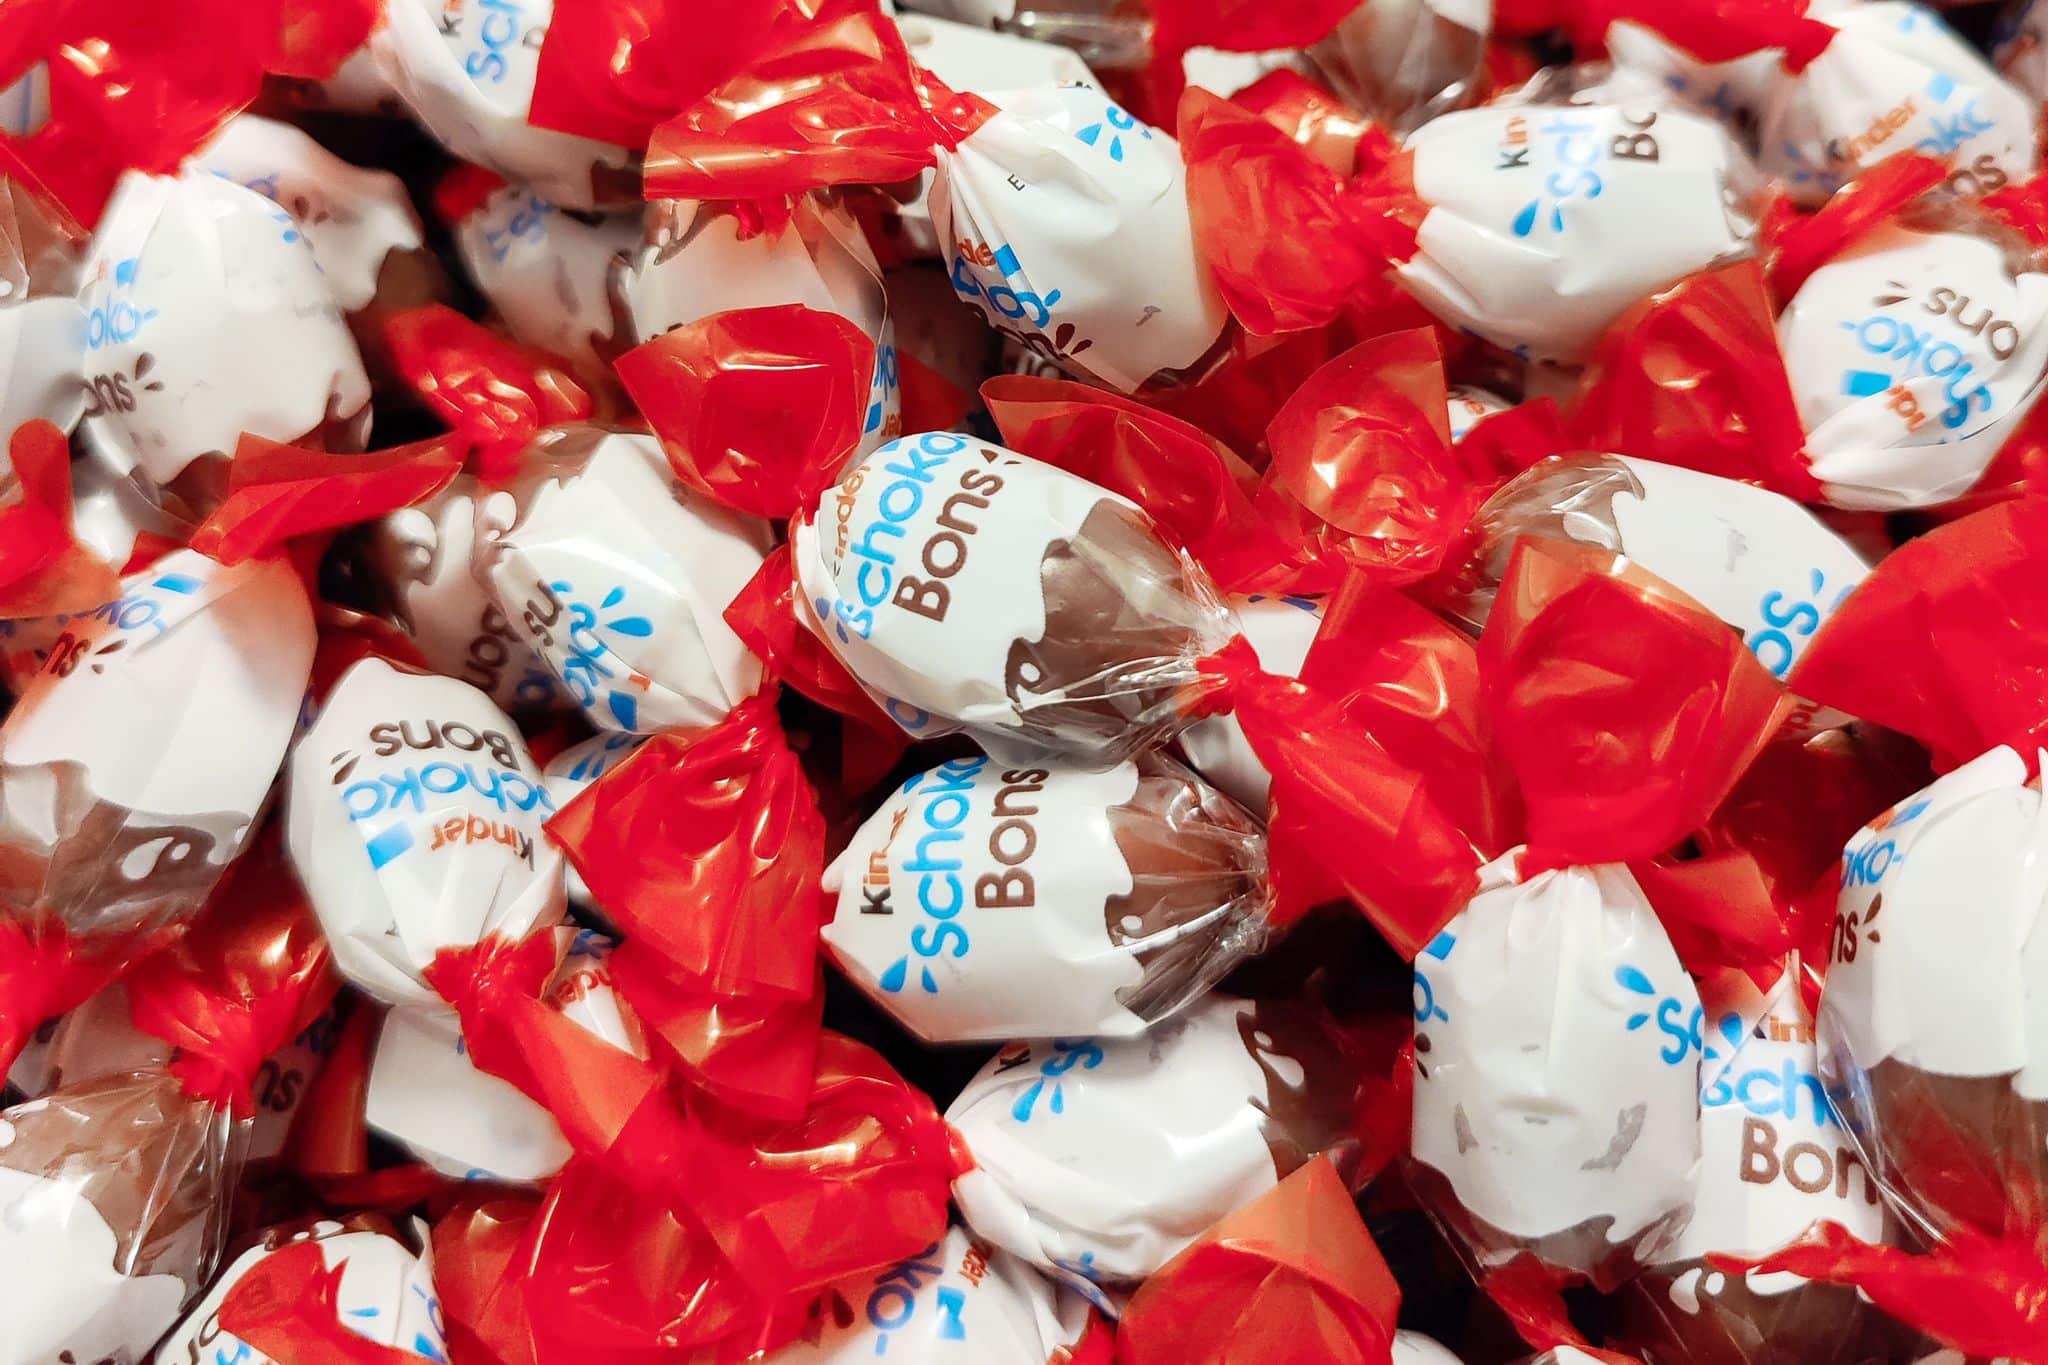 Vorsorgliche Warnung vor Salmonellen: Ferrero ruft weitere Kinder-Produkte zurück